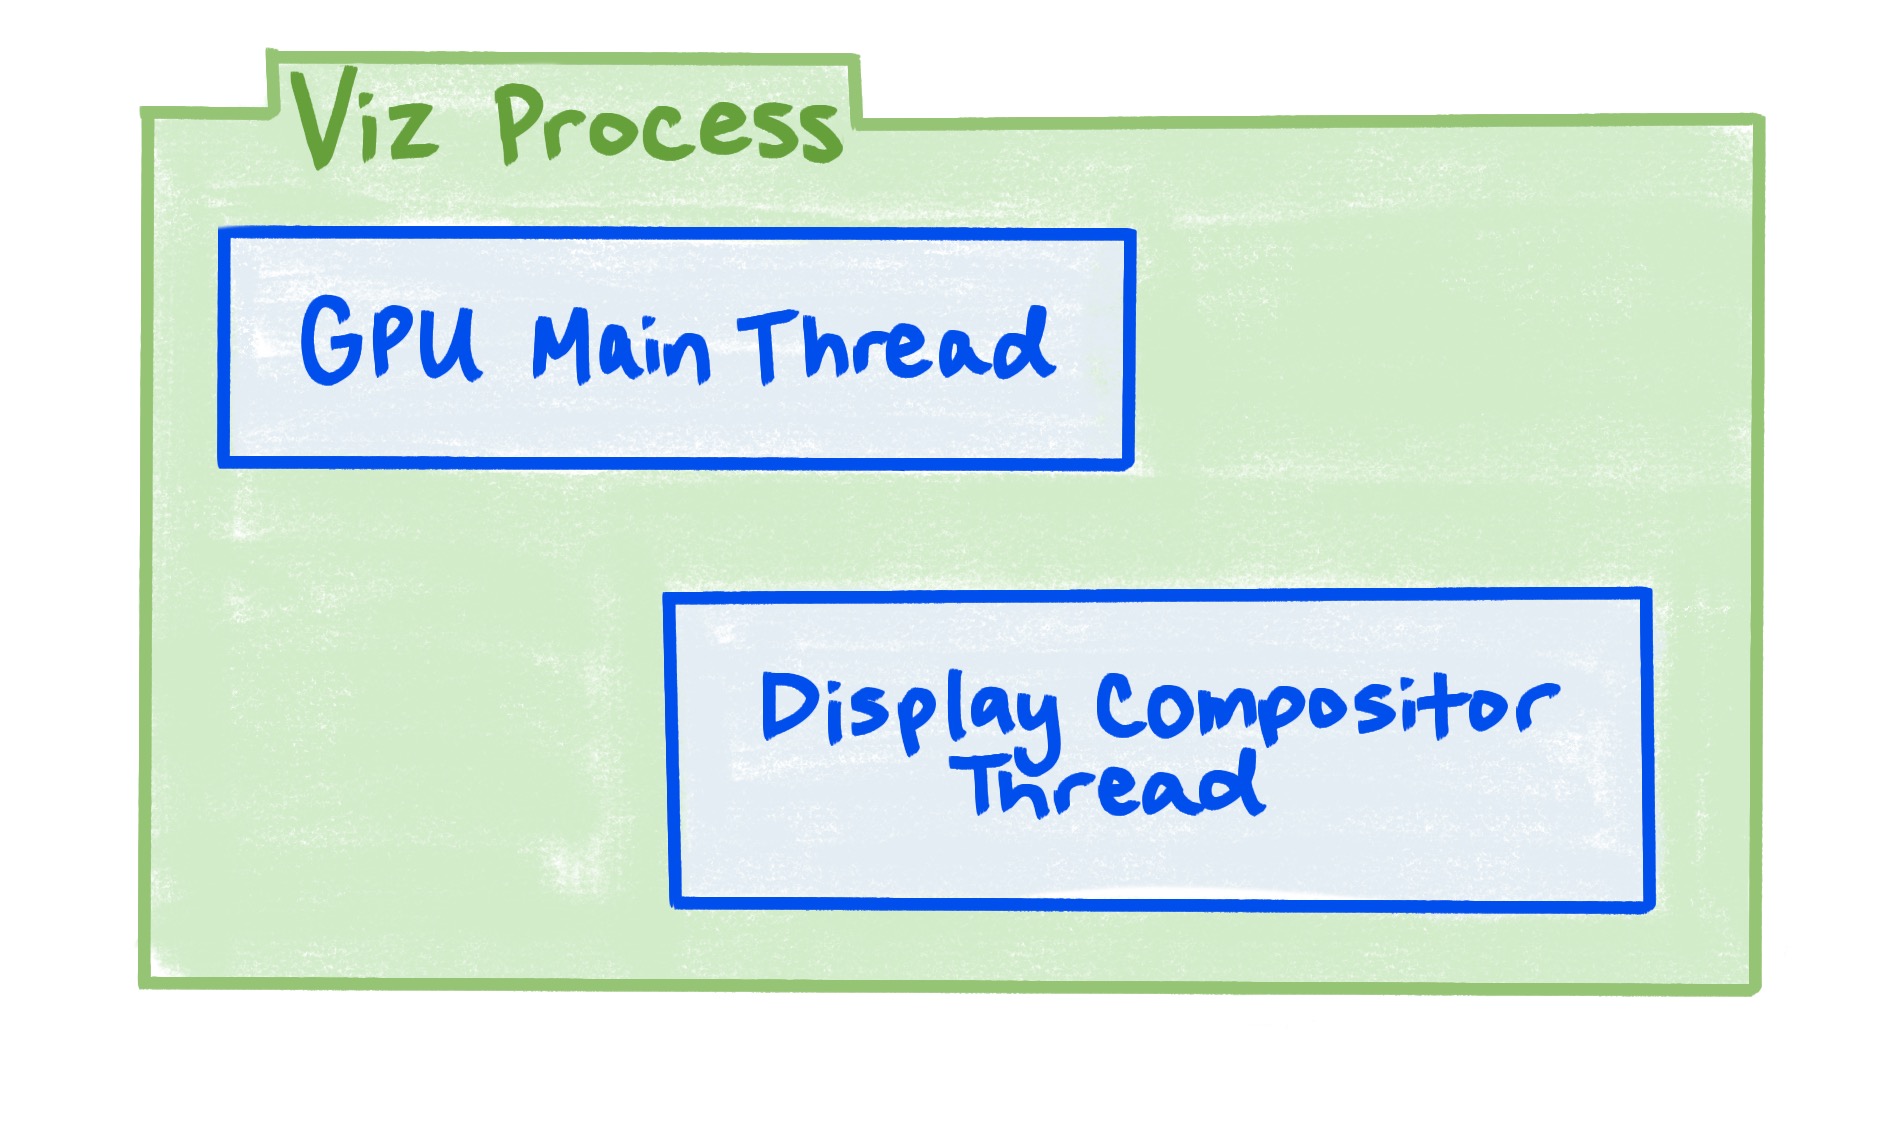 Proces Viz obejmuje wątek główny GPU i wątek kompozytora wyświetlania.